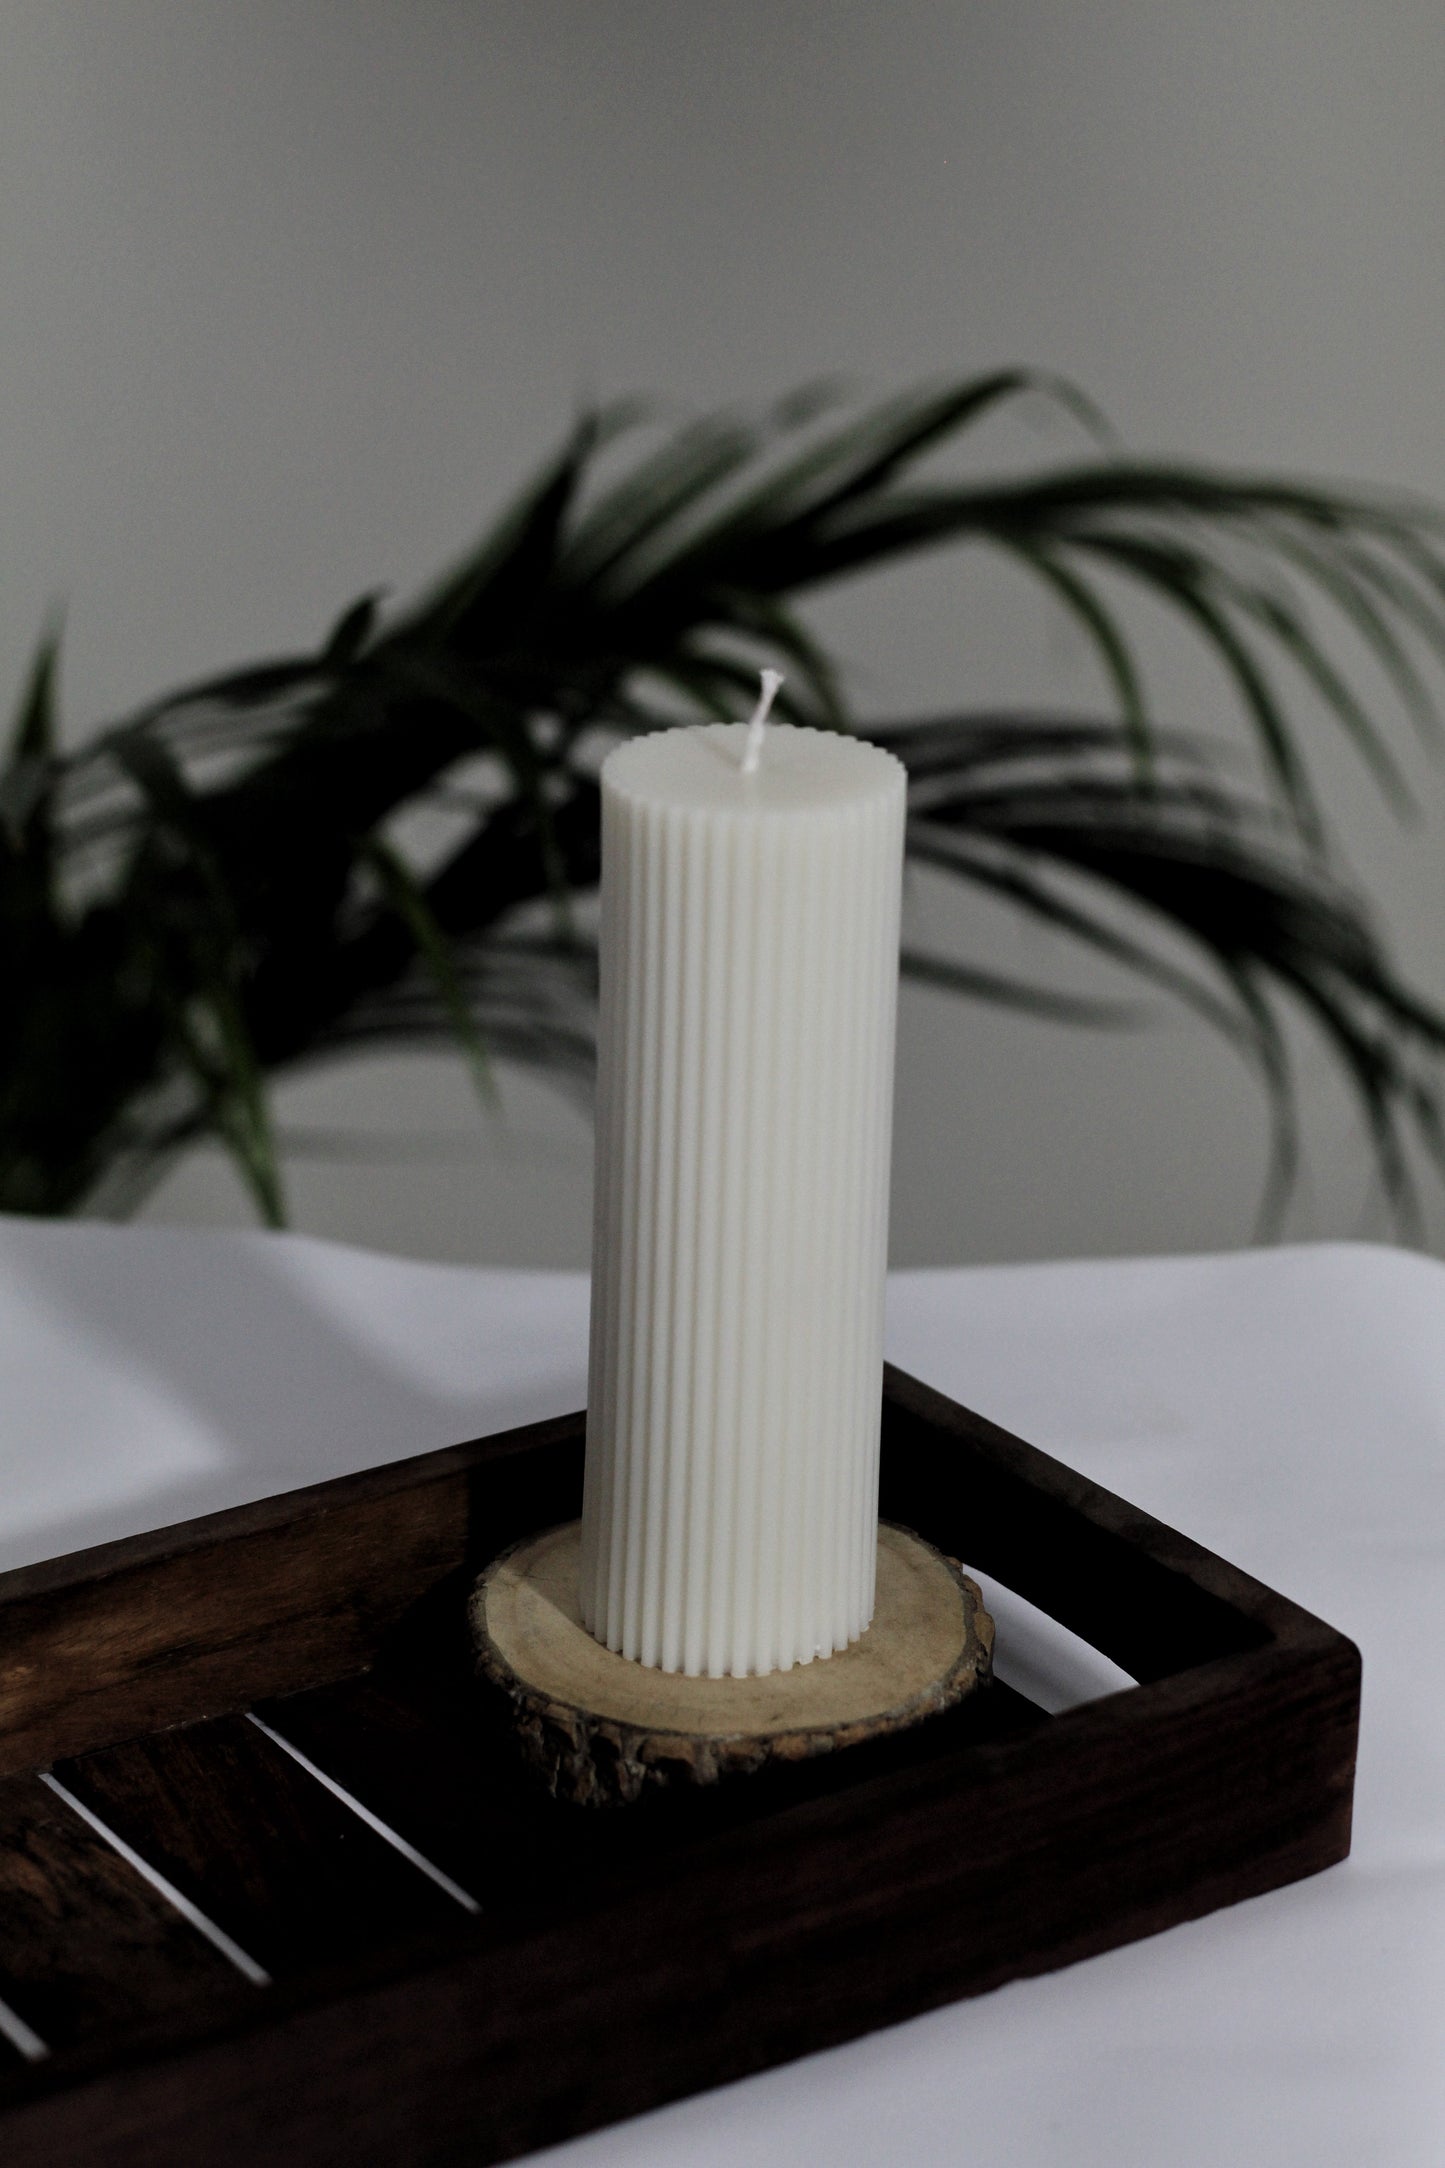 Irregular White Pillar Candle